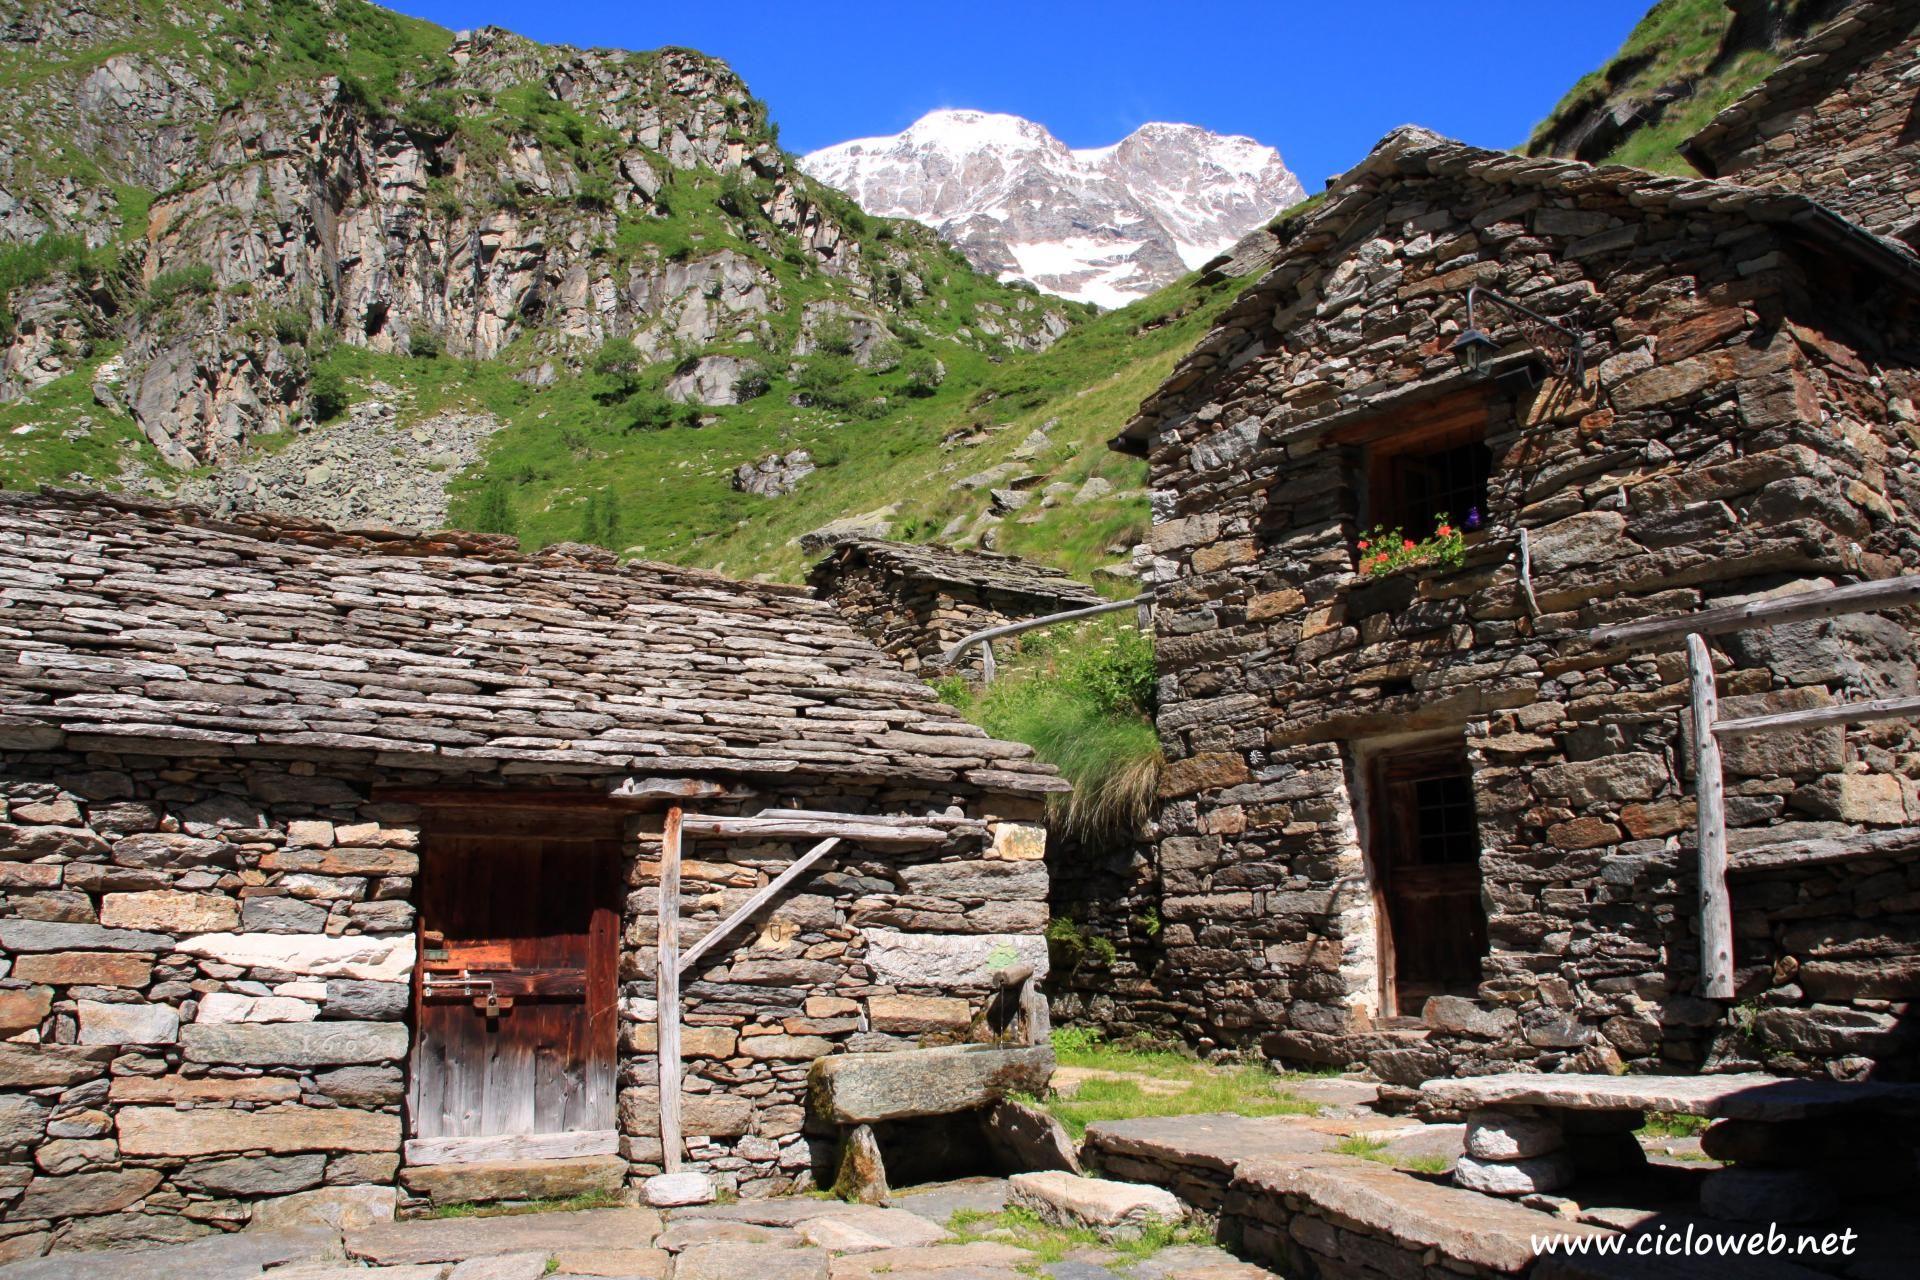 008 - Alpe Bors e rifugio Crespi Calderini, sullo sfondo il Monte Rosa.jpg